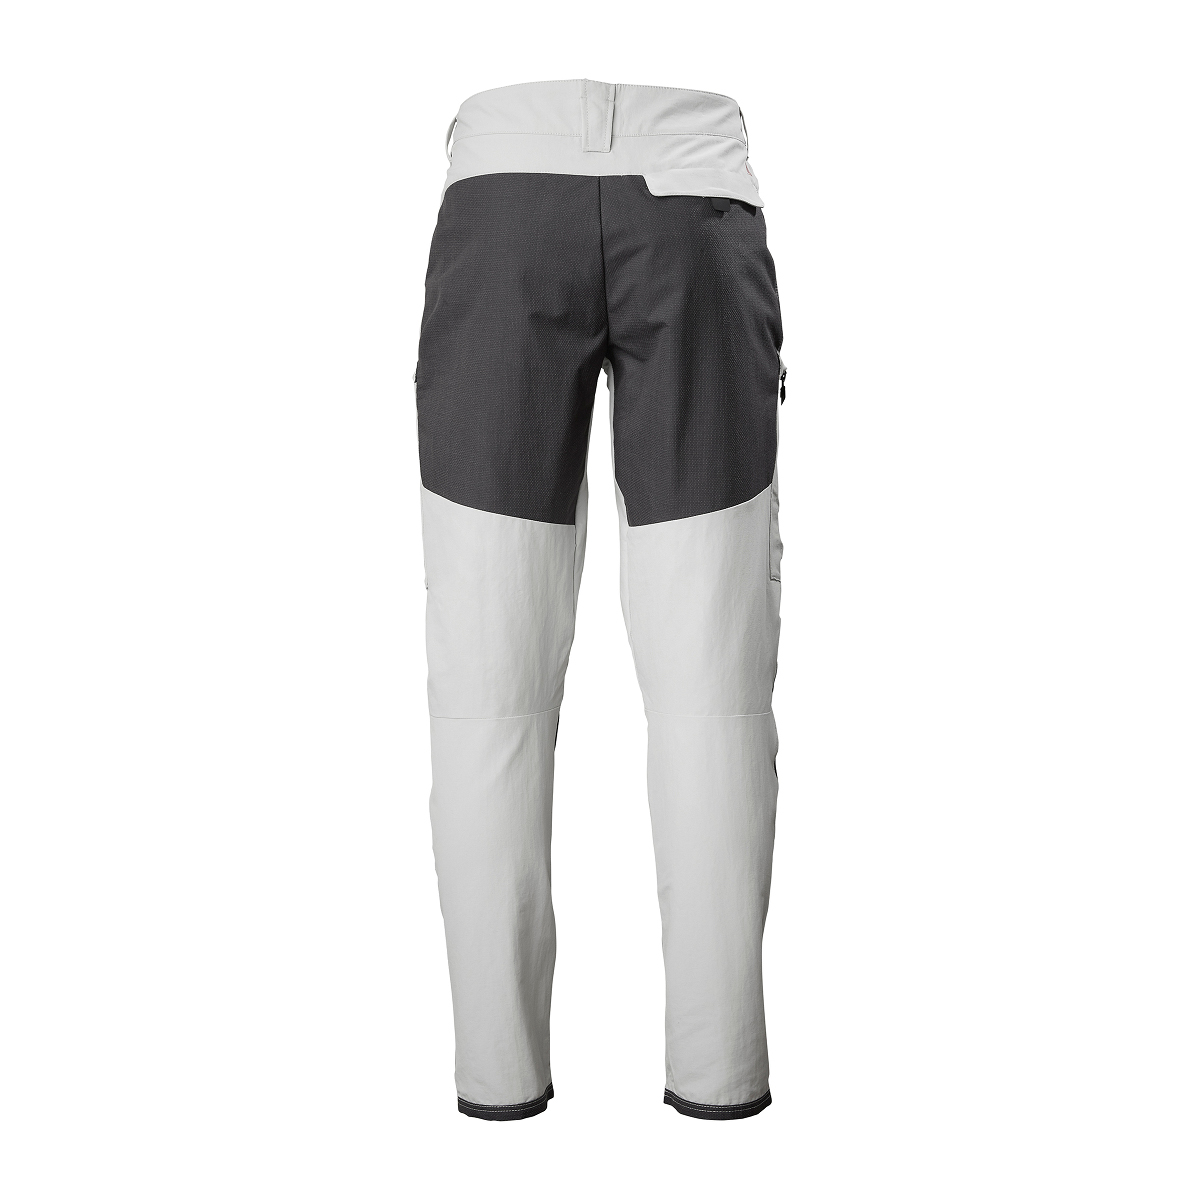 Musto Evolution Performance pantalon de voile 2.0 homme gris clair, taille 34